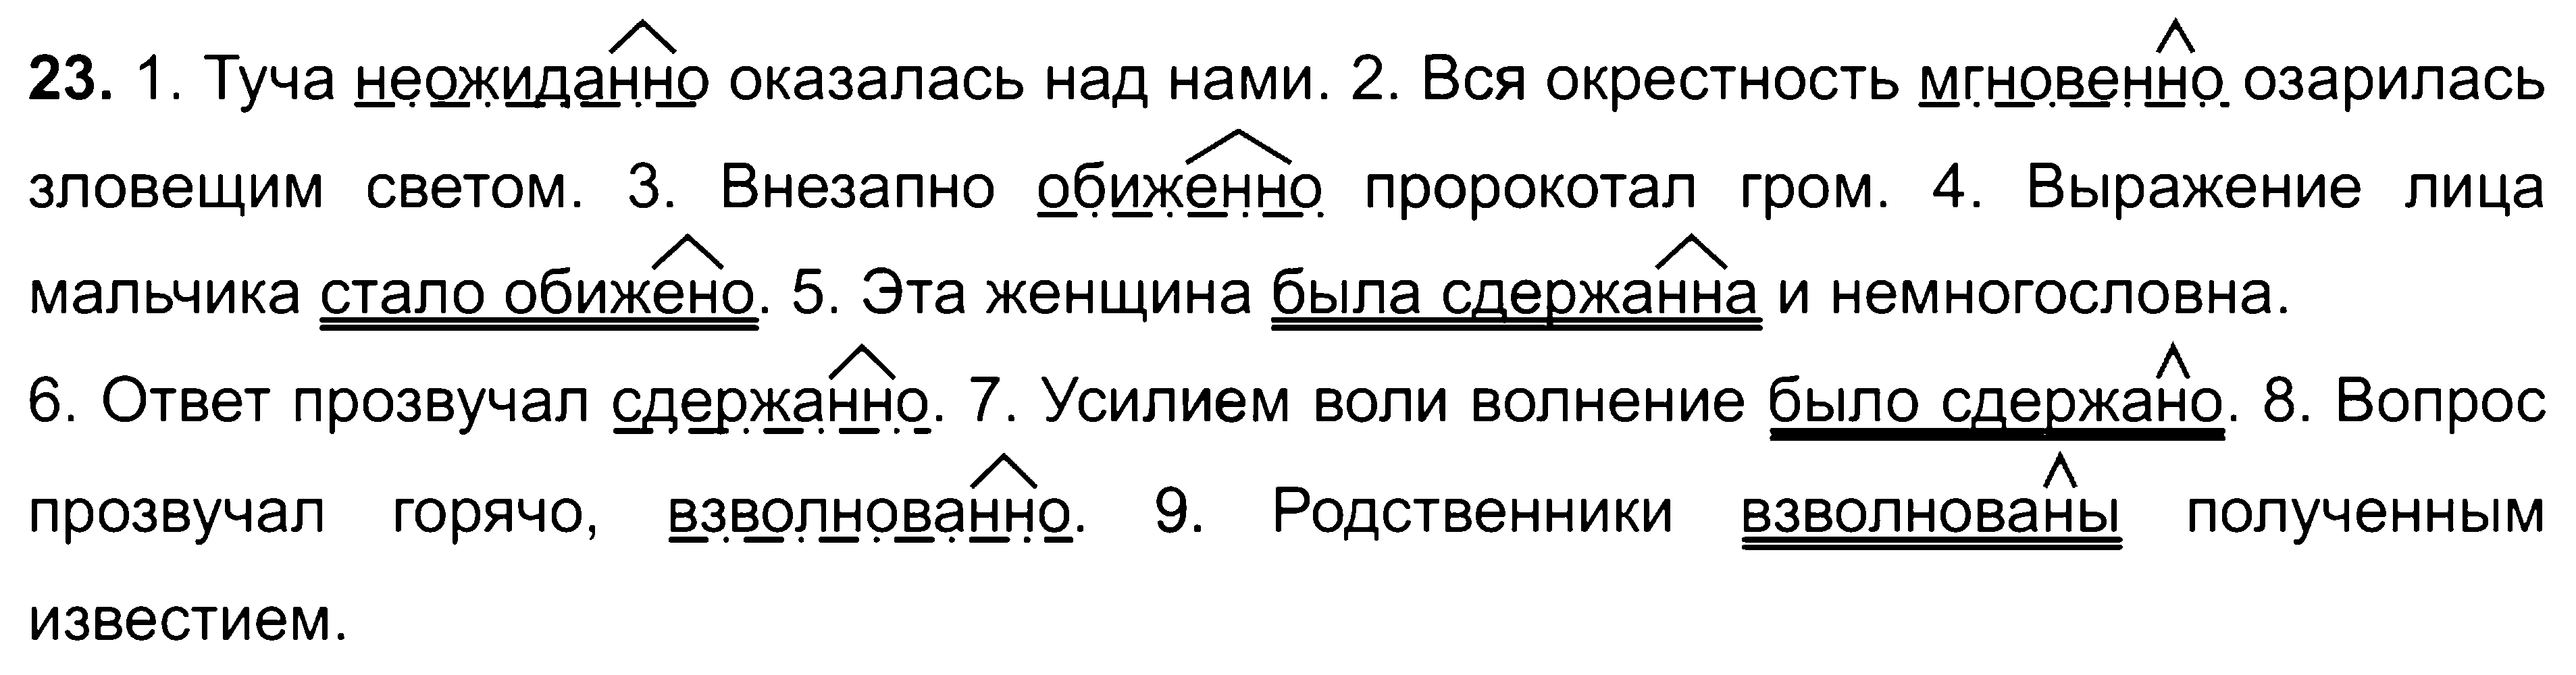 ГДЗ Русский язык 8 класс - 23